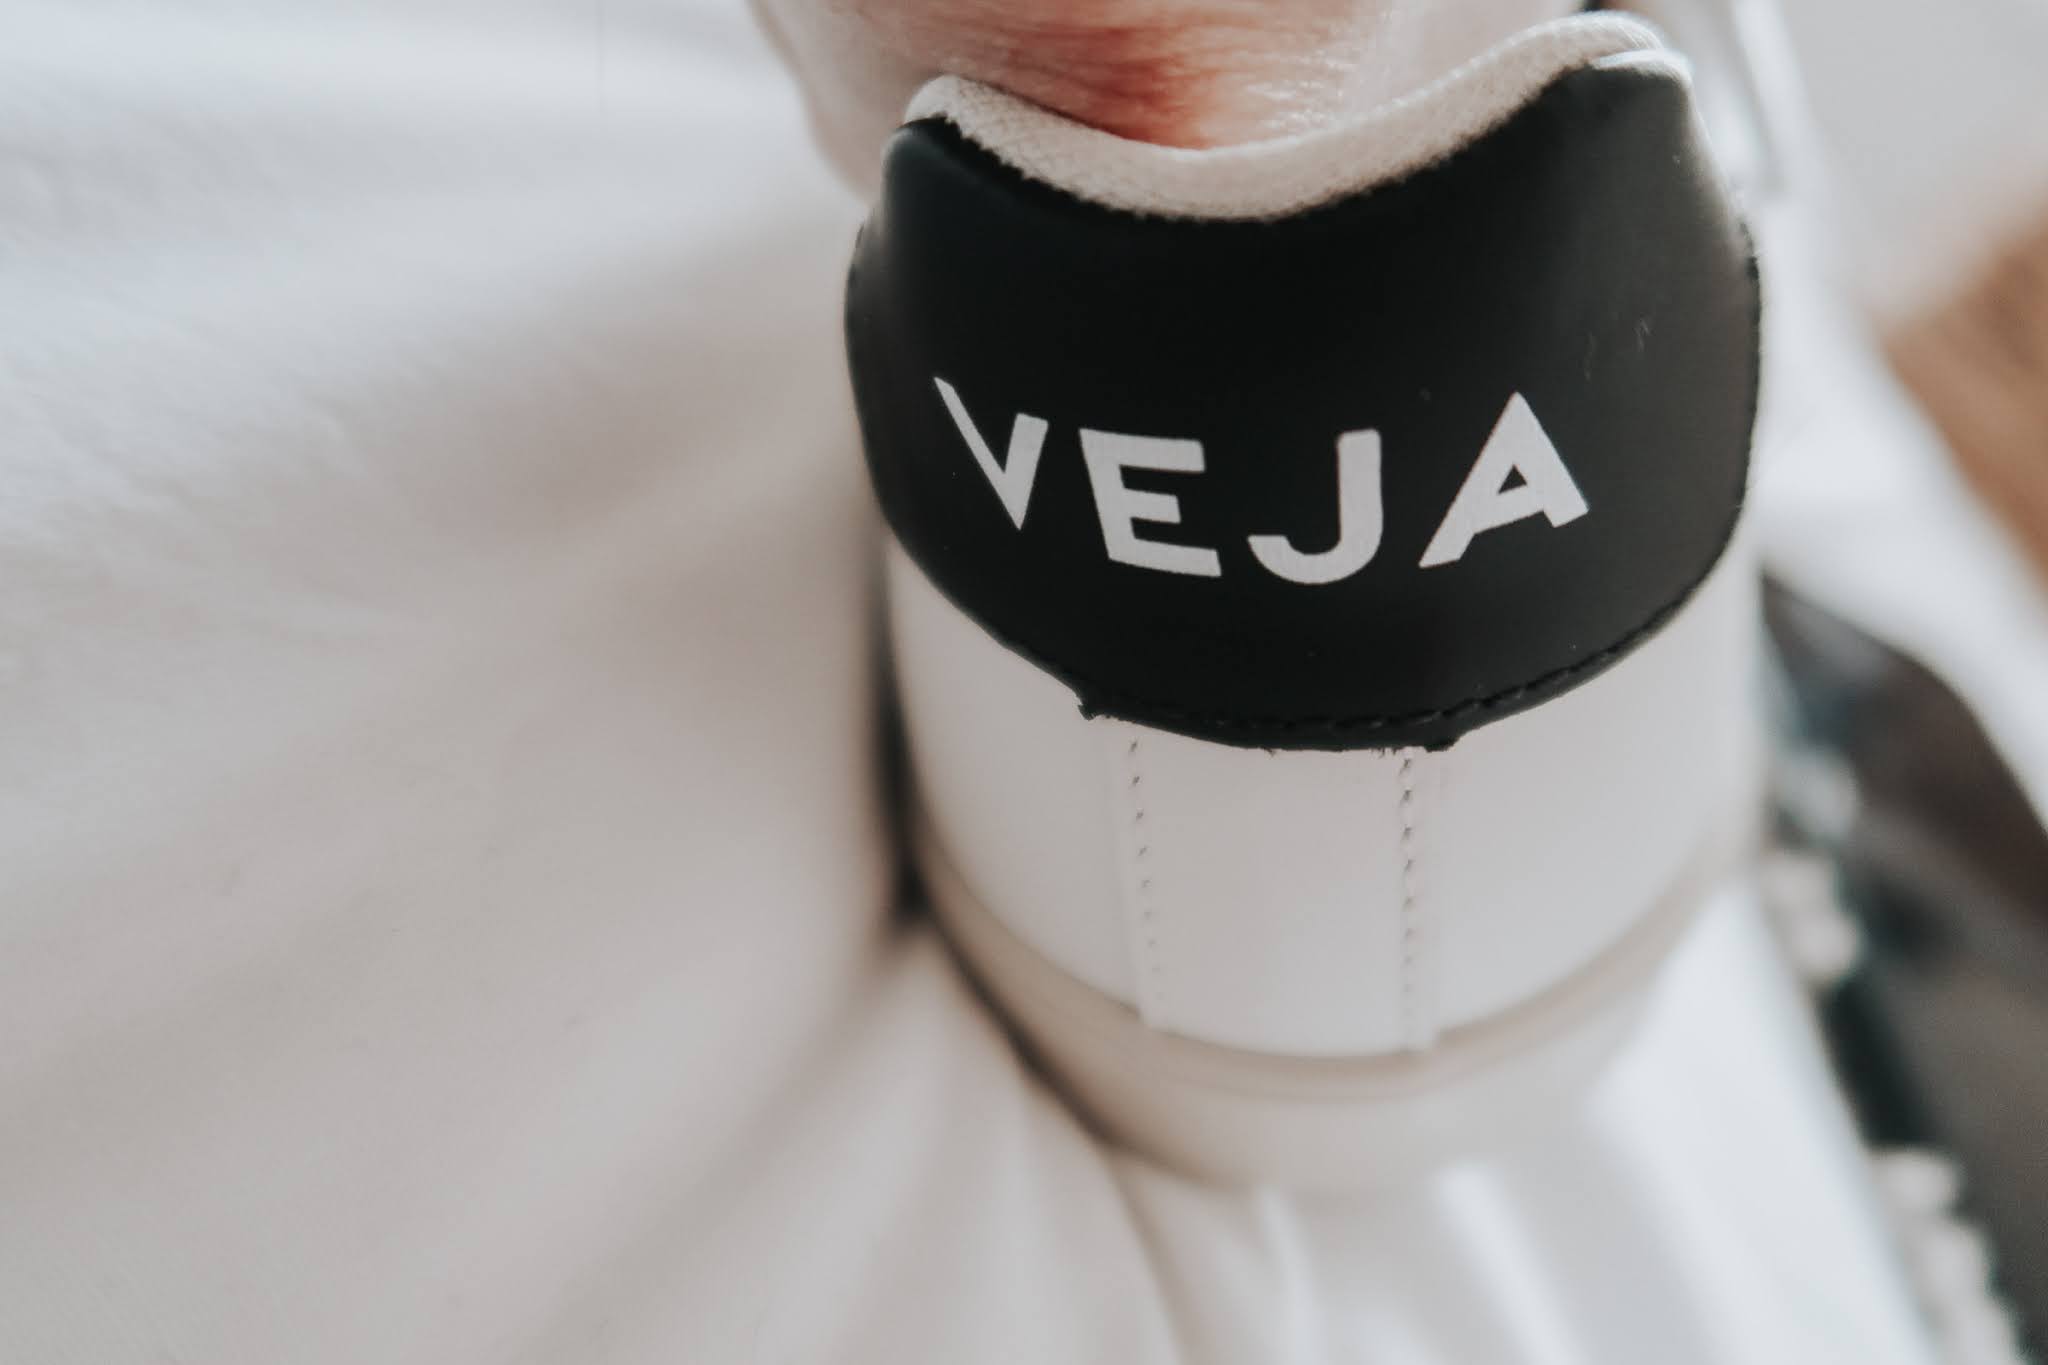 The back of a Veja trainer shoe.